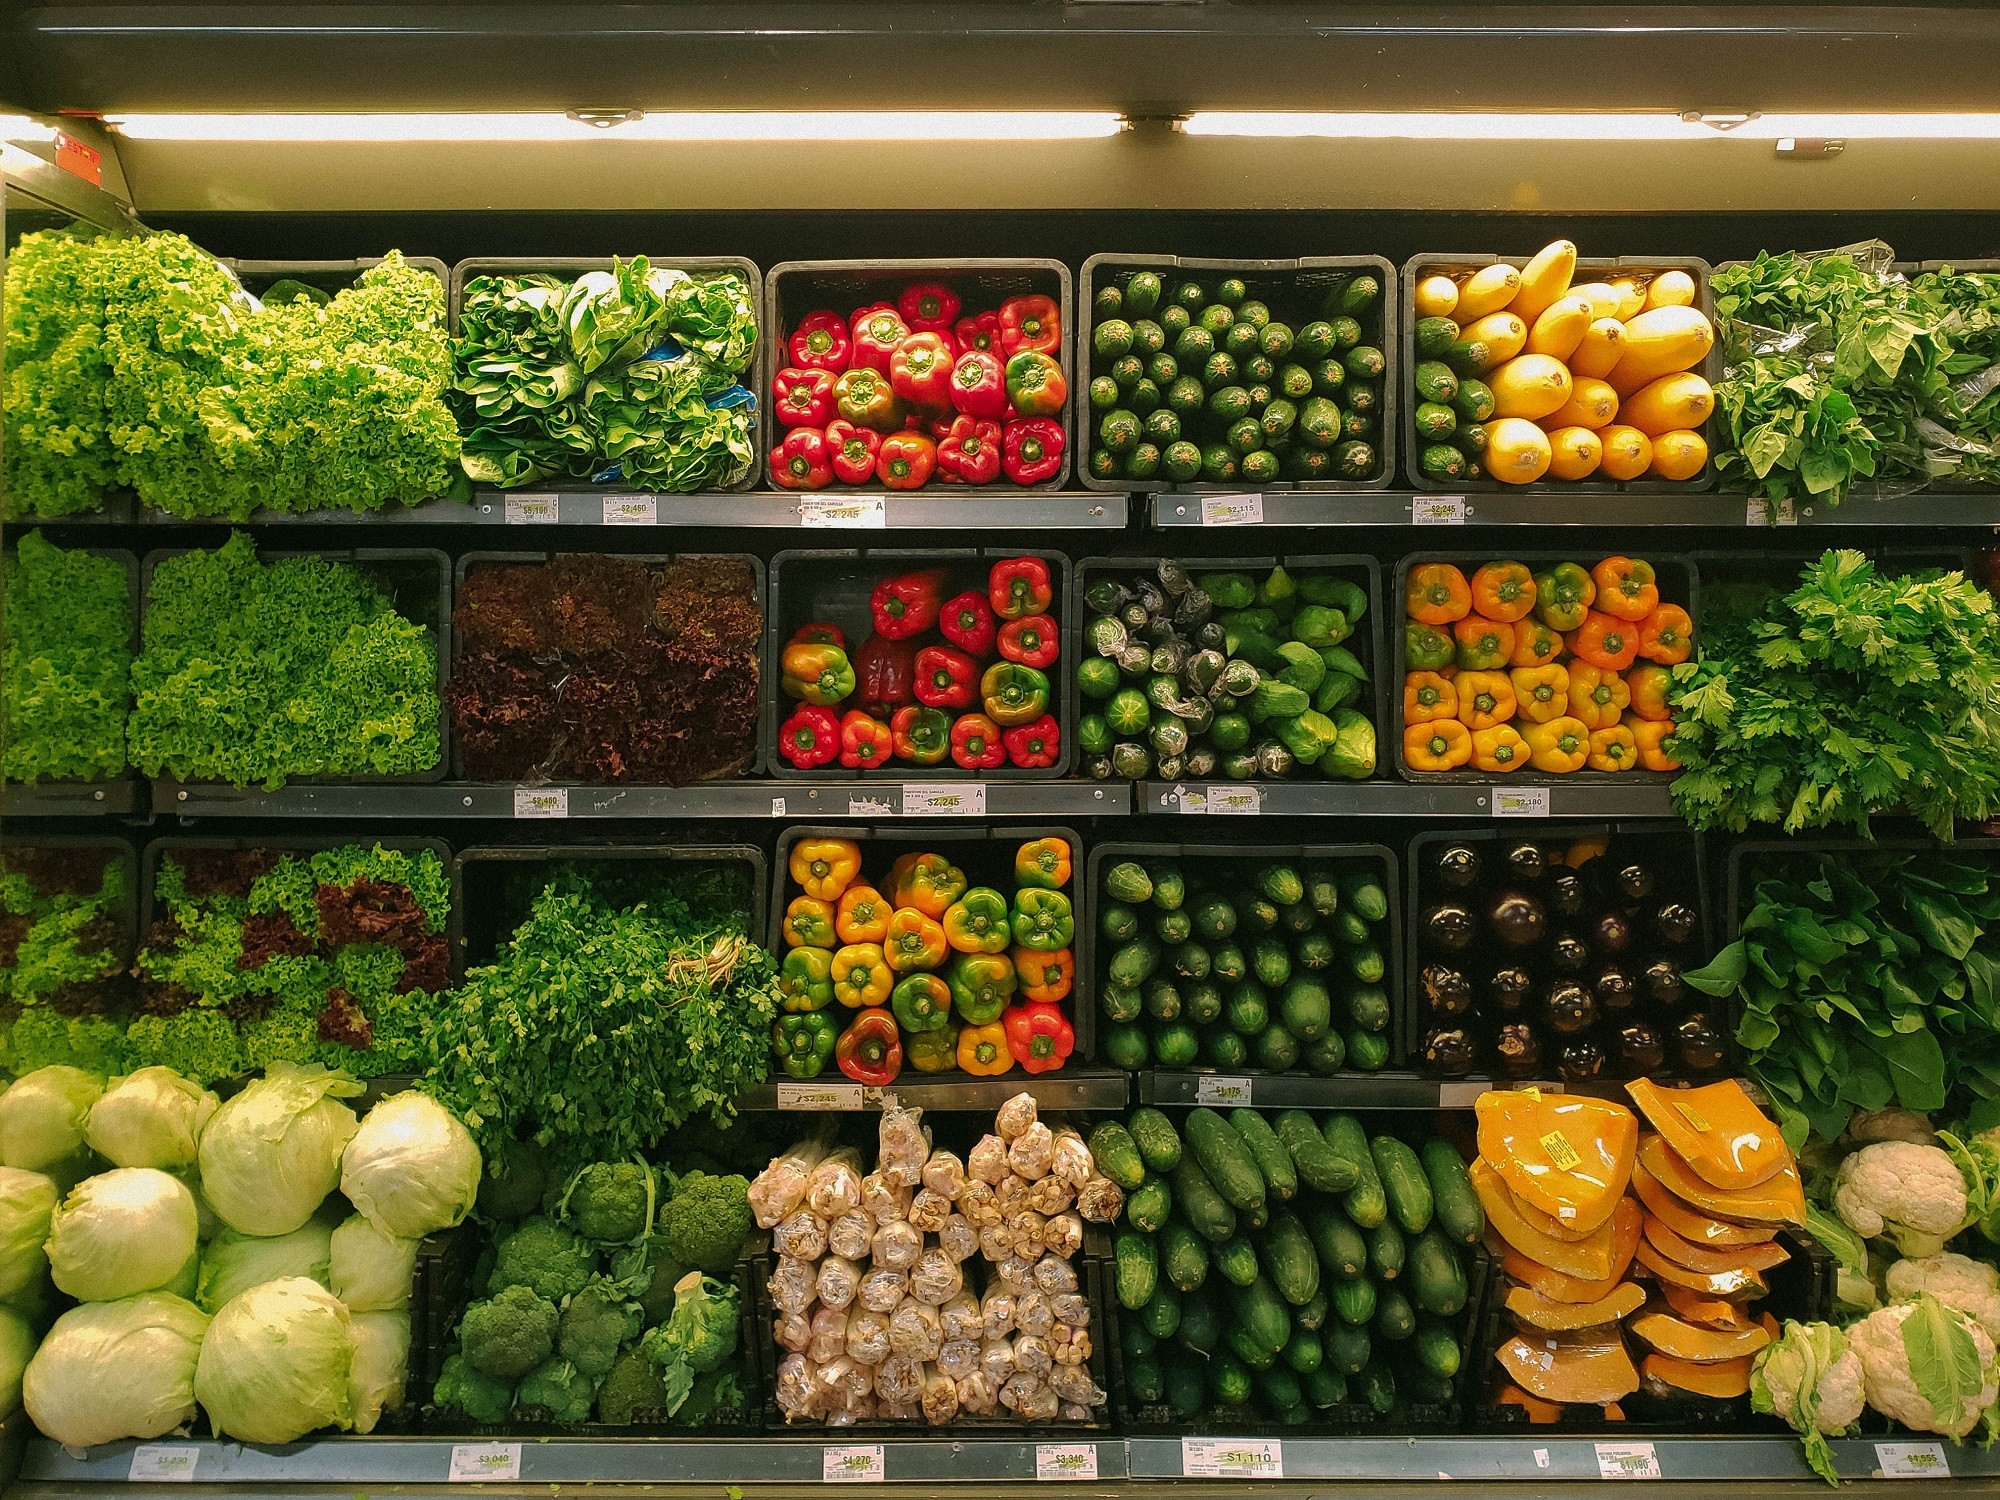 las verduras también pasan los controles sanitarios de los alimentos